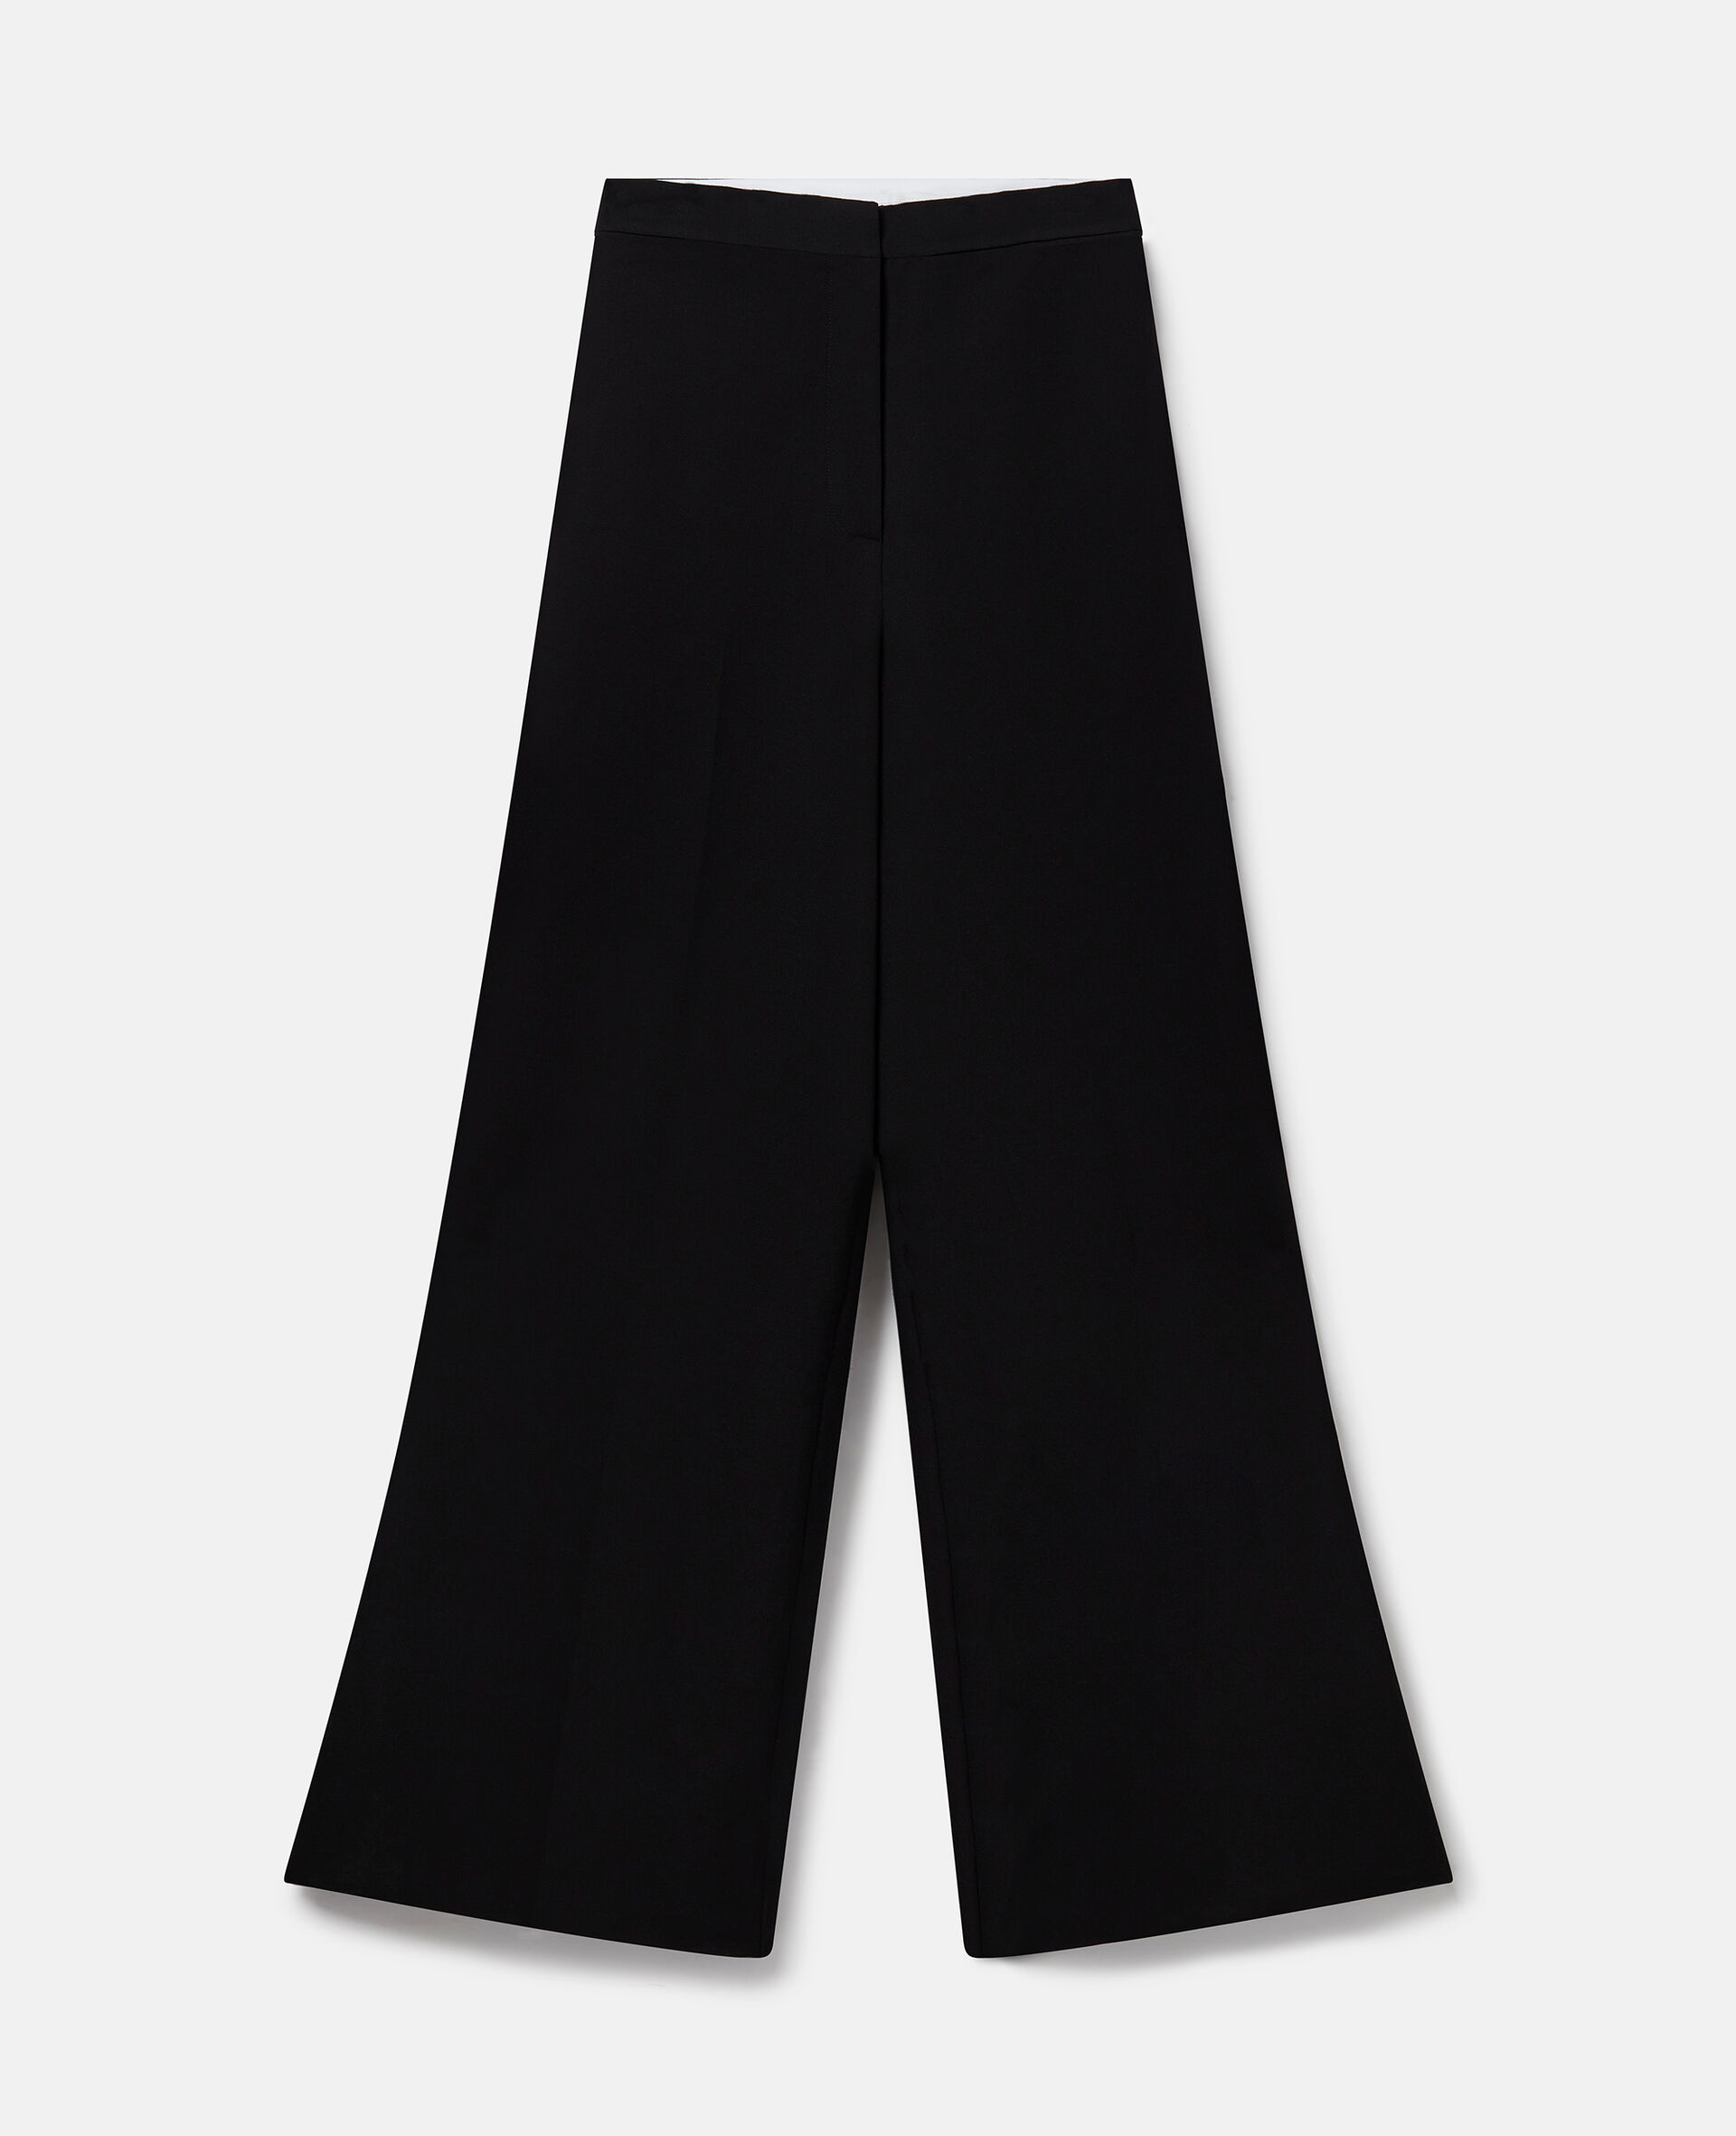 Hose aus Wolle mit Falten, hohem Bund und weitem Hosenbein-Schwarz-large image number 0